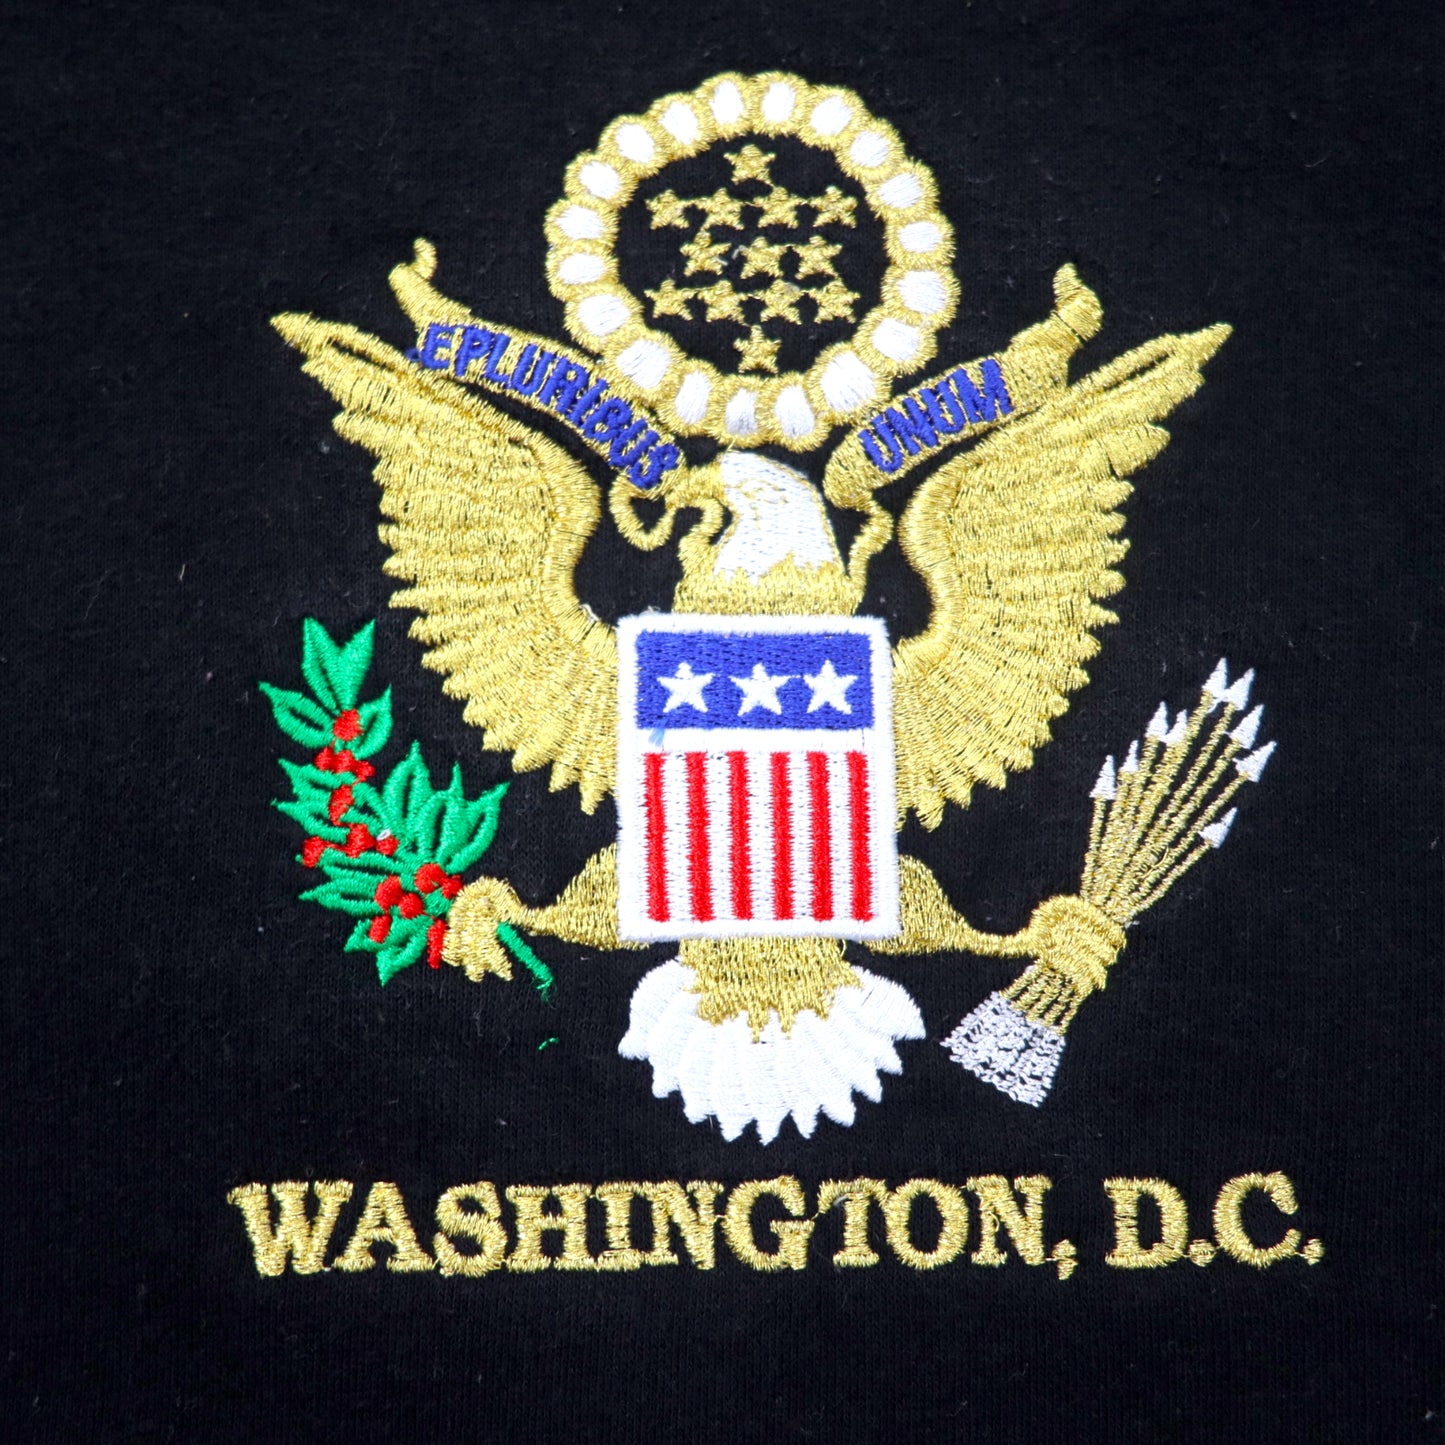 BAY SIDE USA製 スウェット M ブラック エンブレム 刺繍 コットン 裏起毛 WASHINGTON D.C. ビッグサイズ